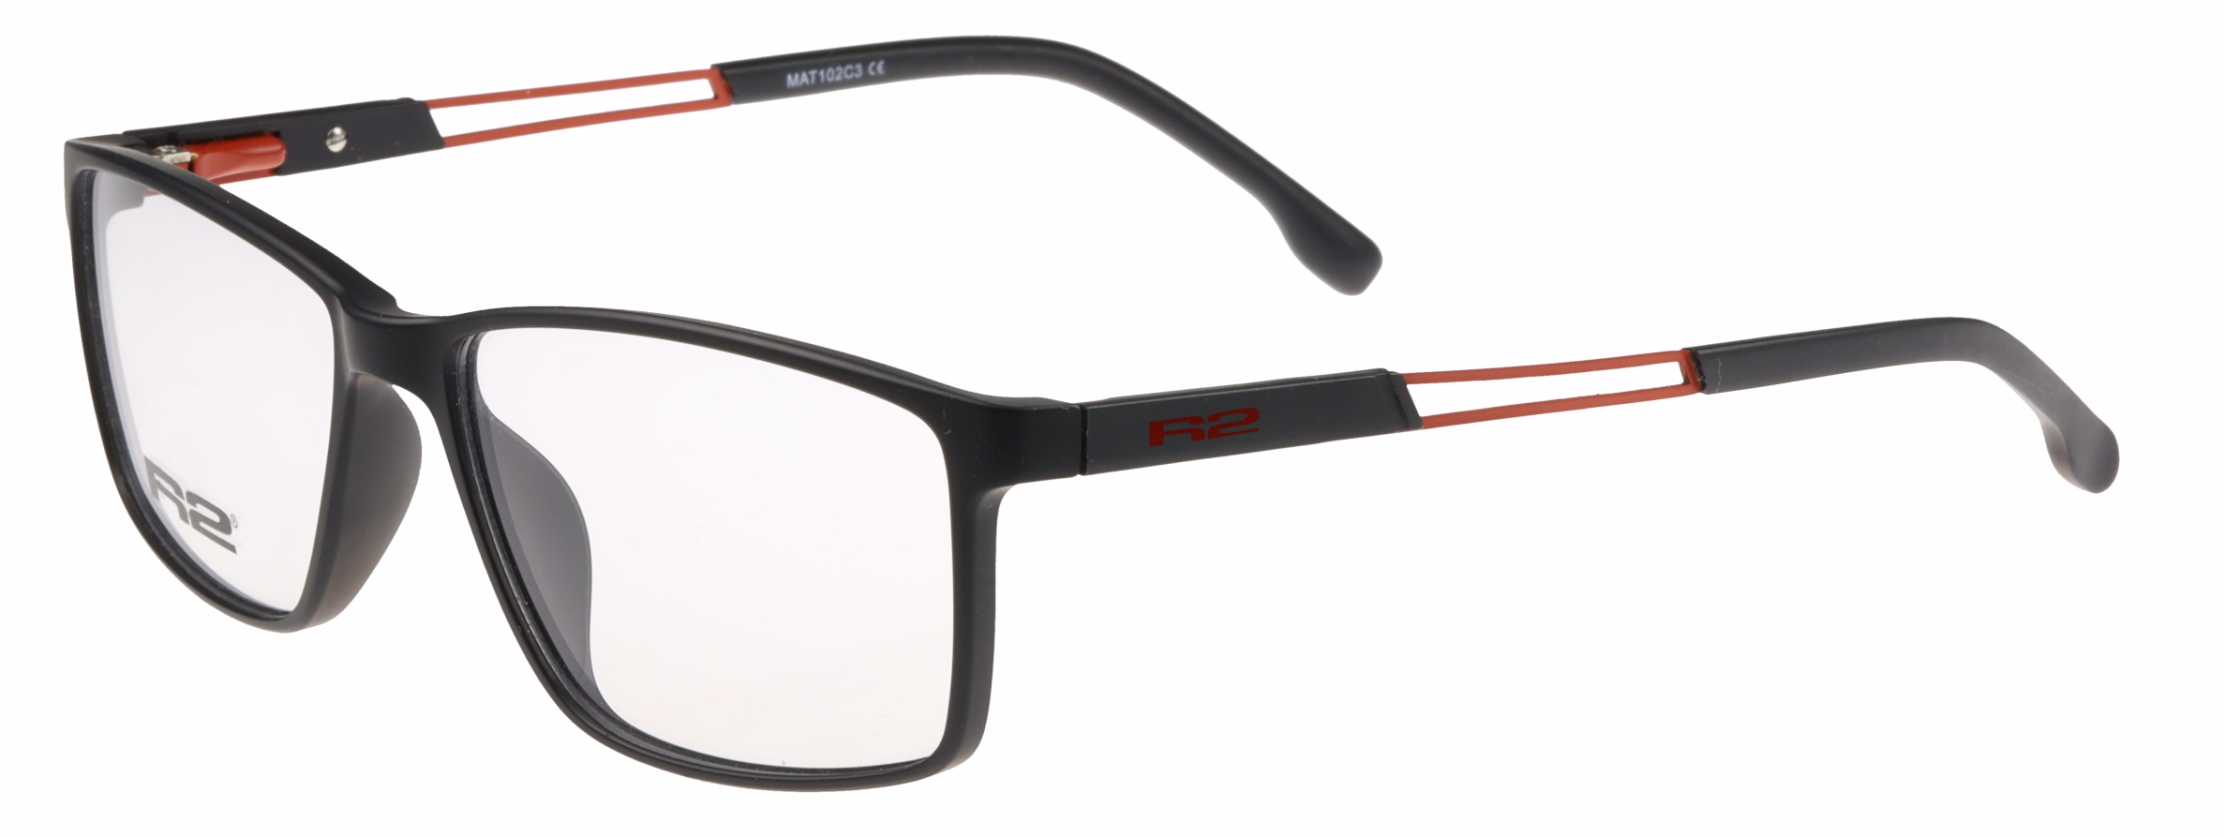 Sportovní dioptrické brýle R2 TRIBAL MAT102C5 - standard